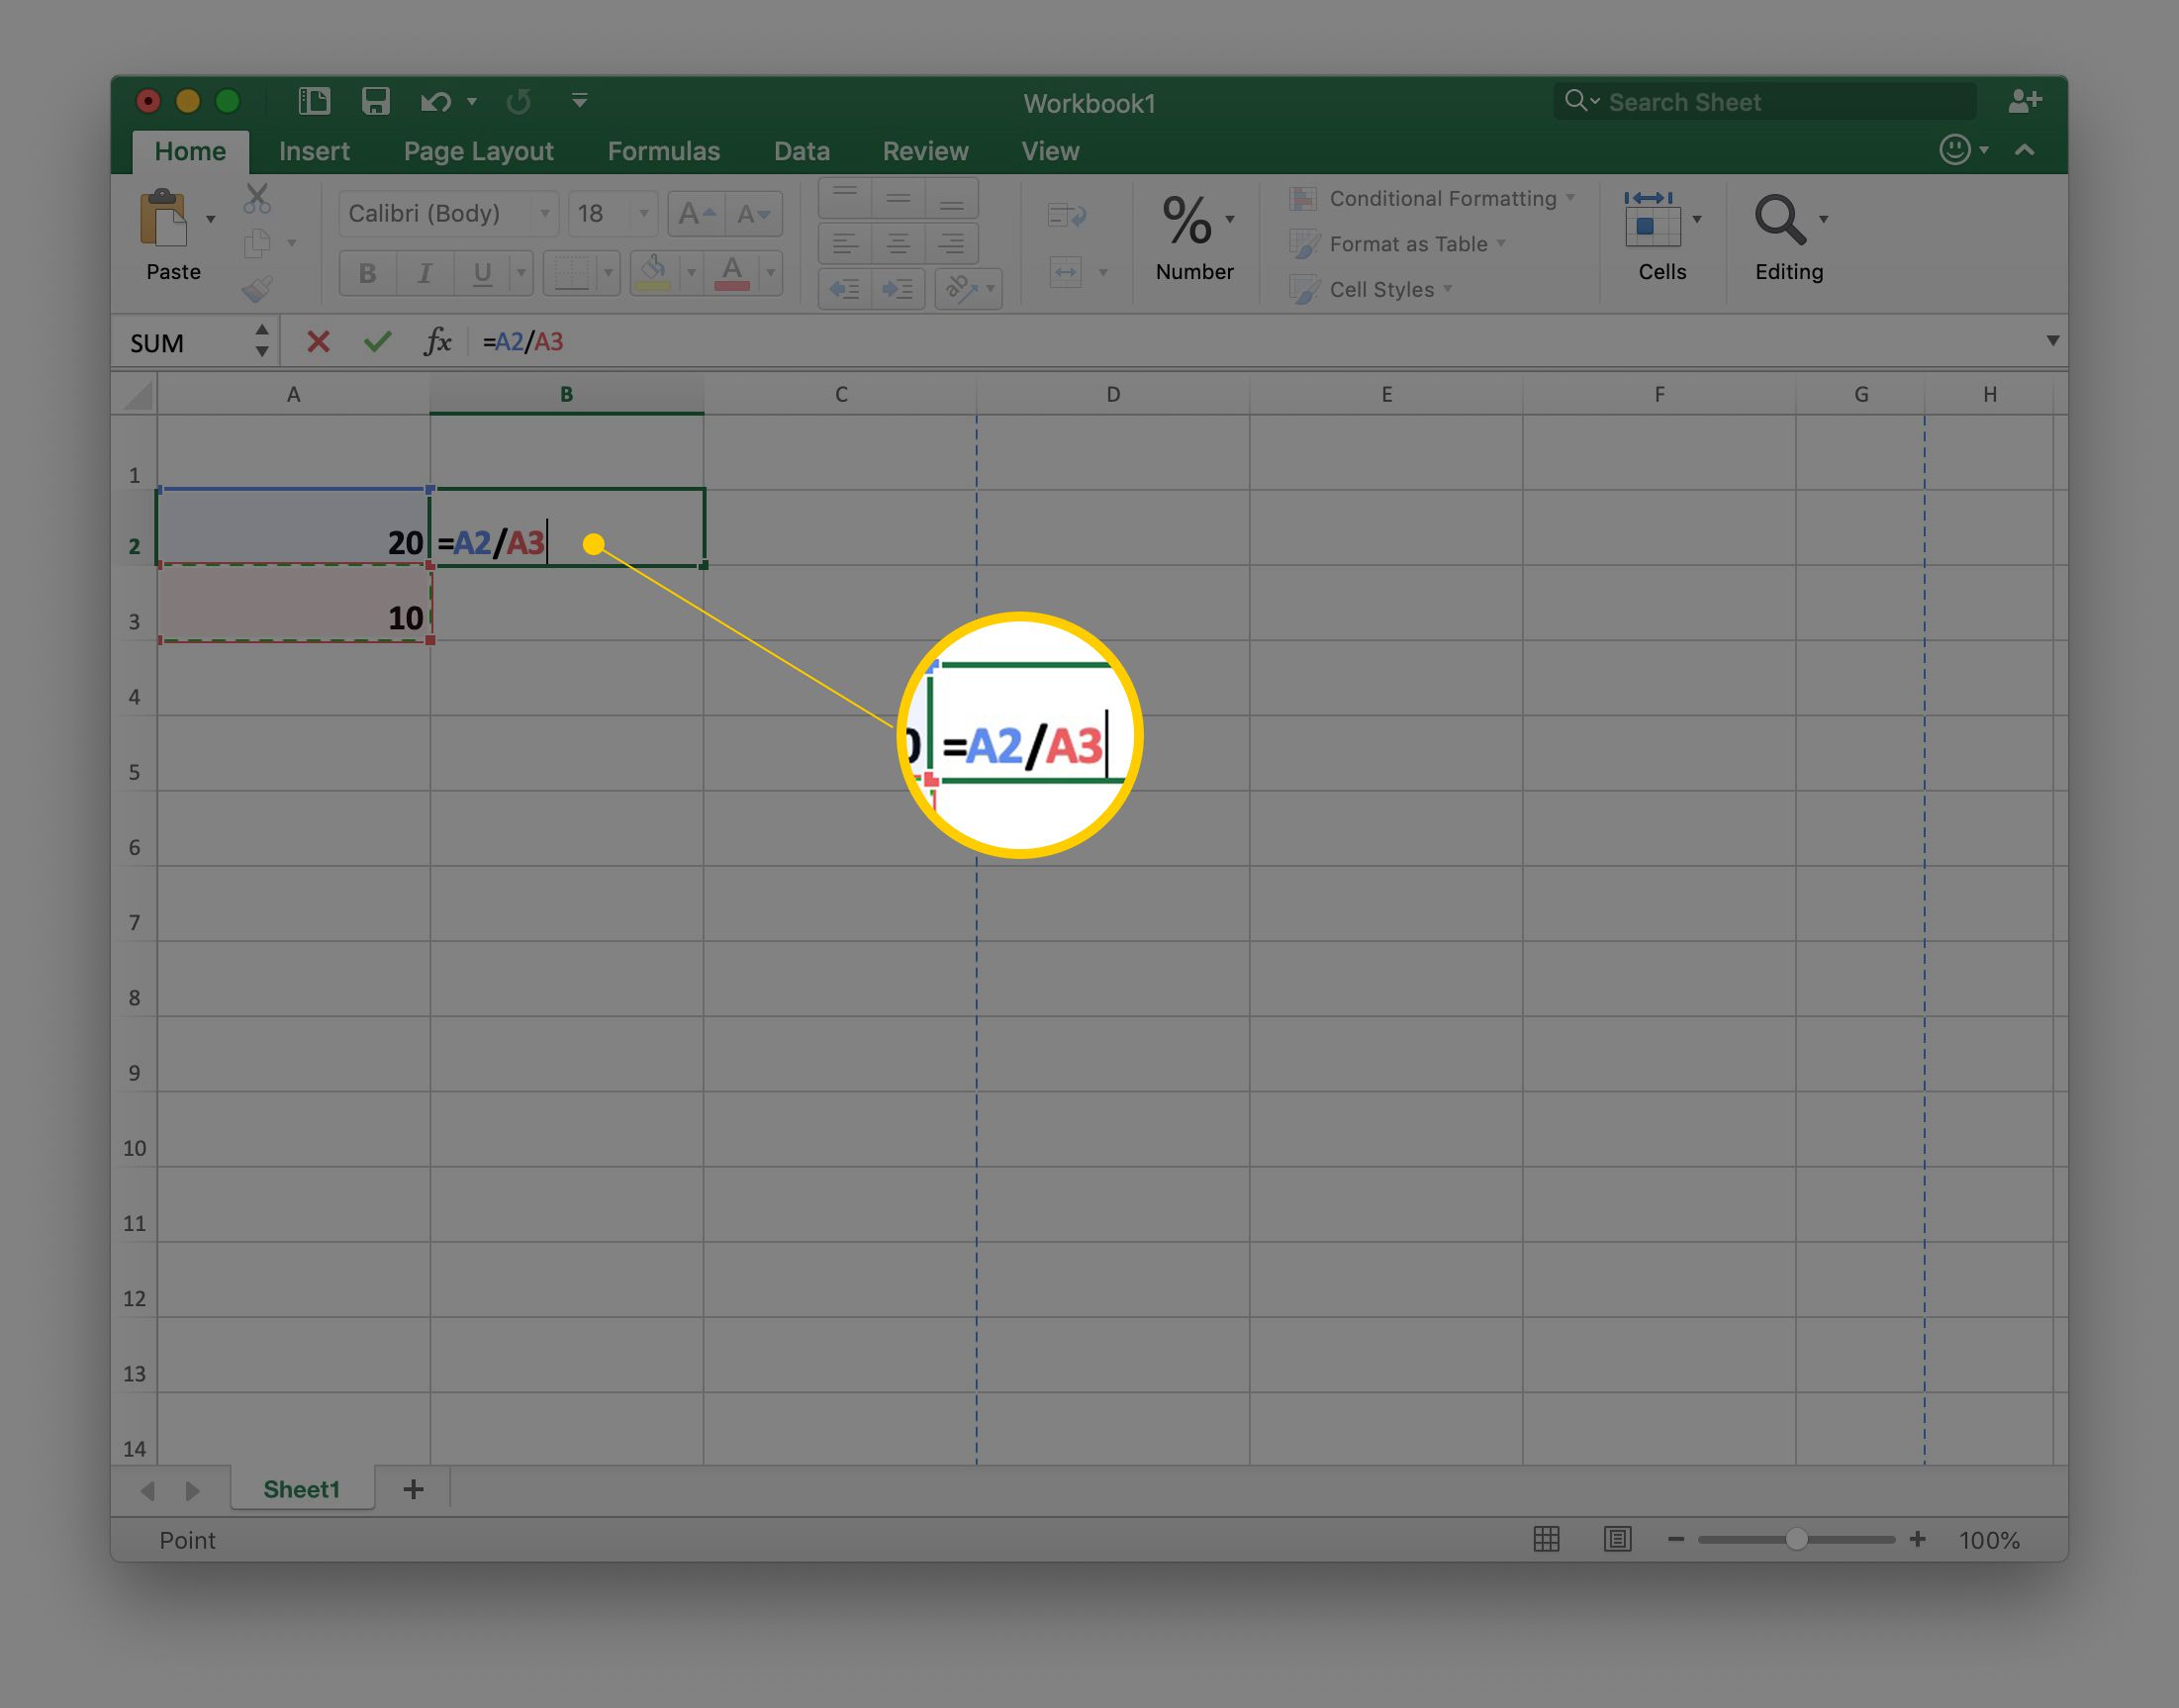 A2/A3 v buňce B2 v tabulce aplikace Excel